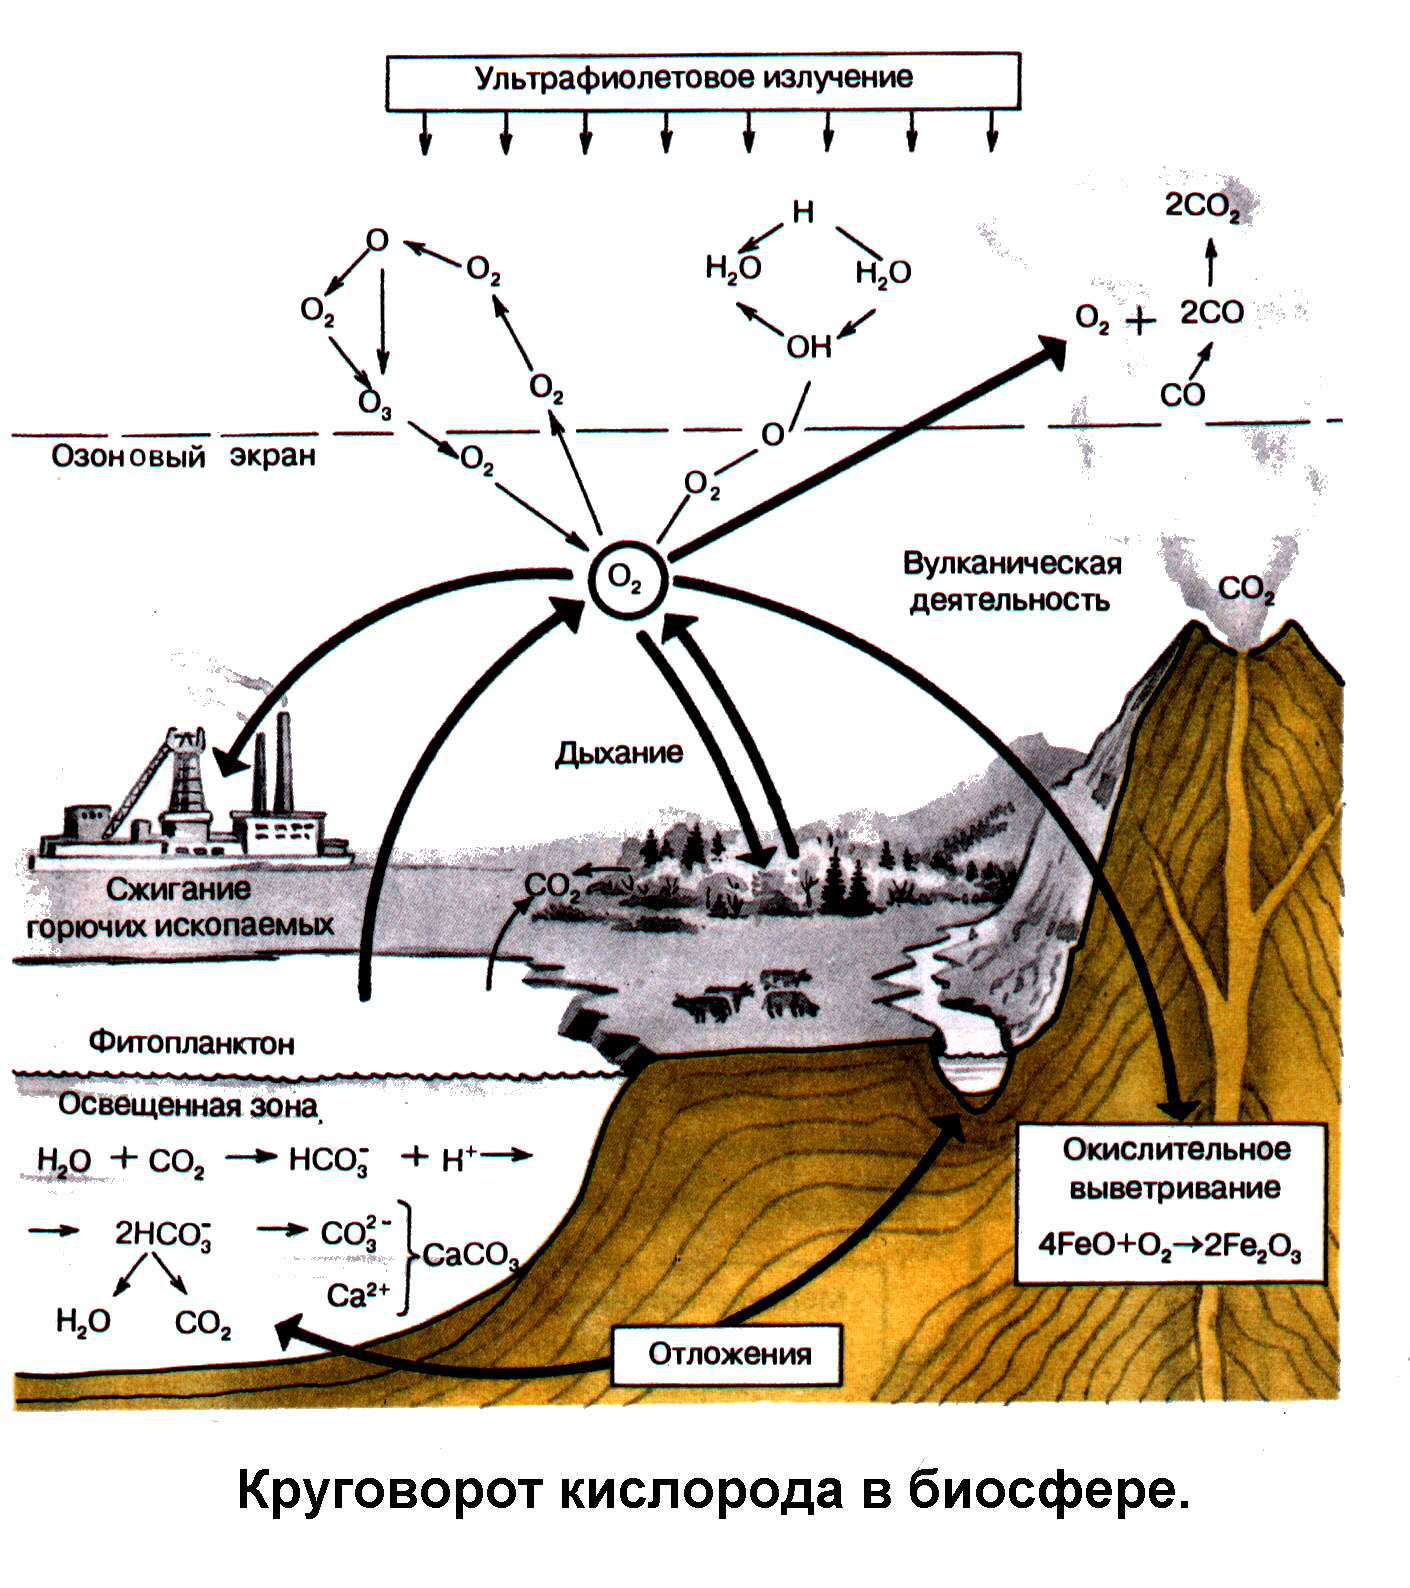 Круговорот кислорода процессы. Схема круговорота кислорода в биосфере схема. Круговорот кислорода в биосфере. Круговорот кислорода в биосфере схема. Биогеохимический круговорот кислорода.